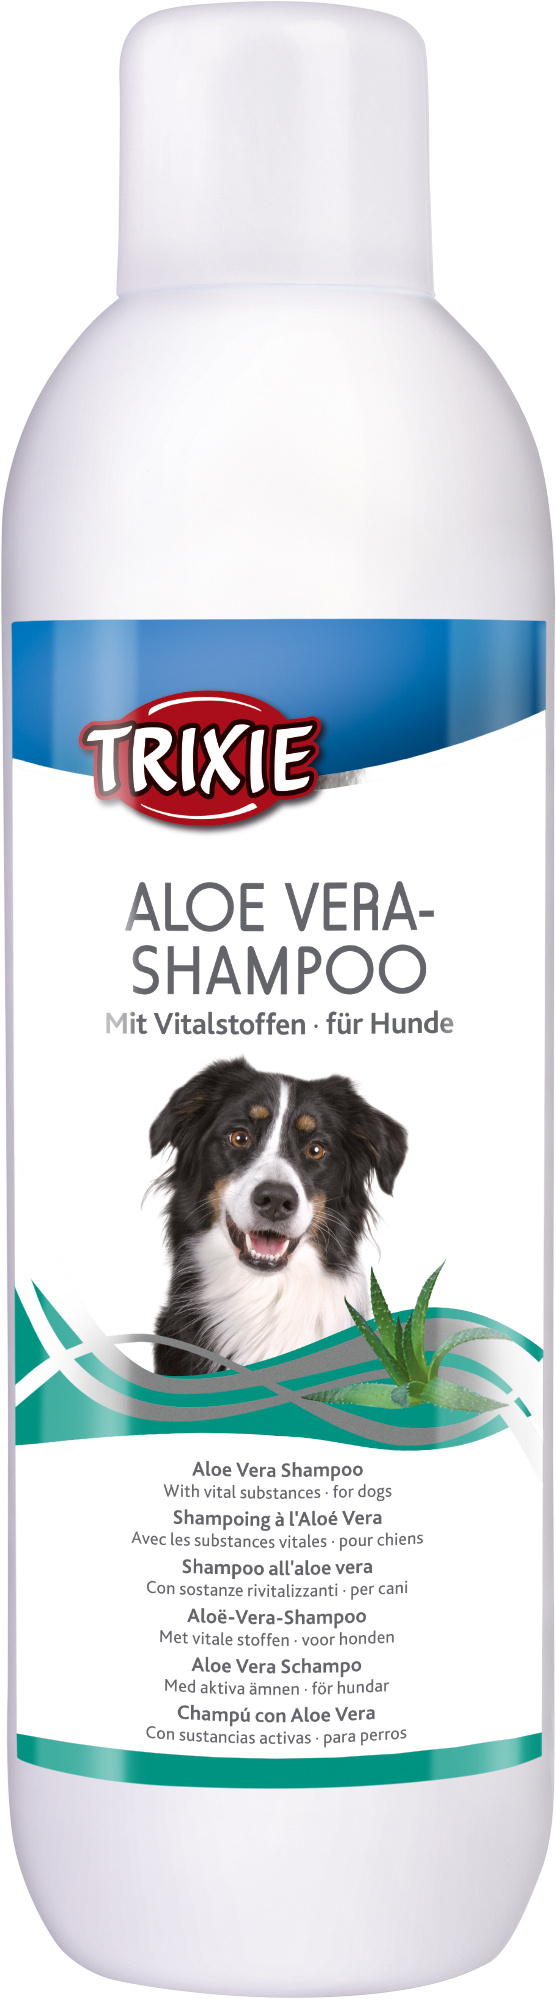 Champô para cães com pele sensível da Trixie com aloe vera